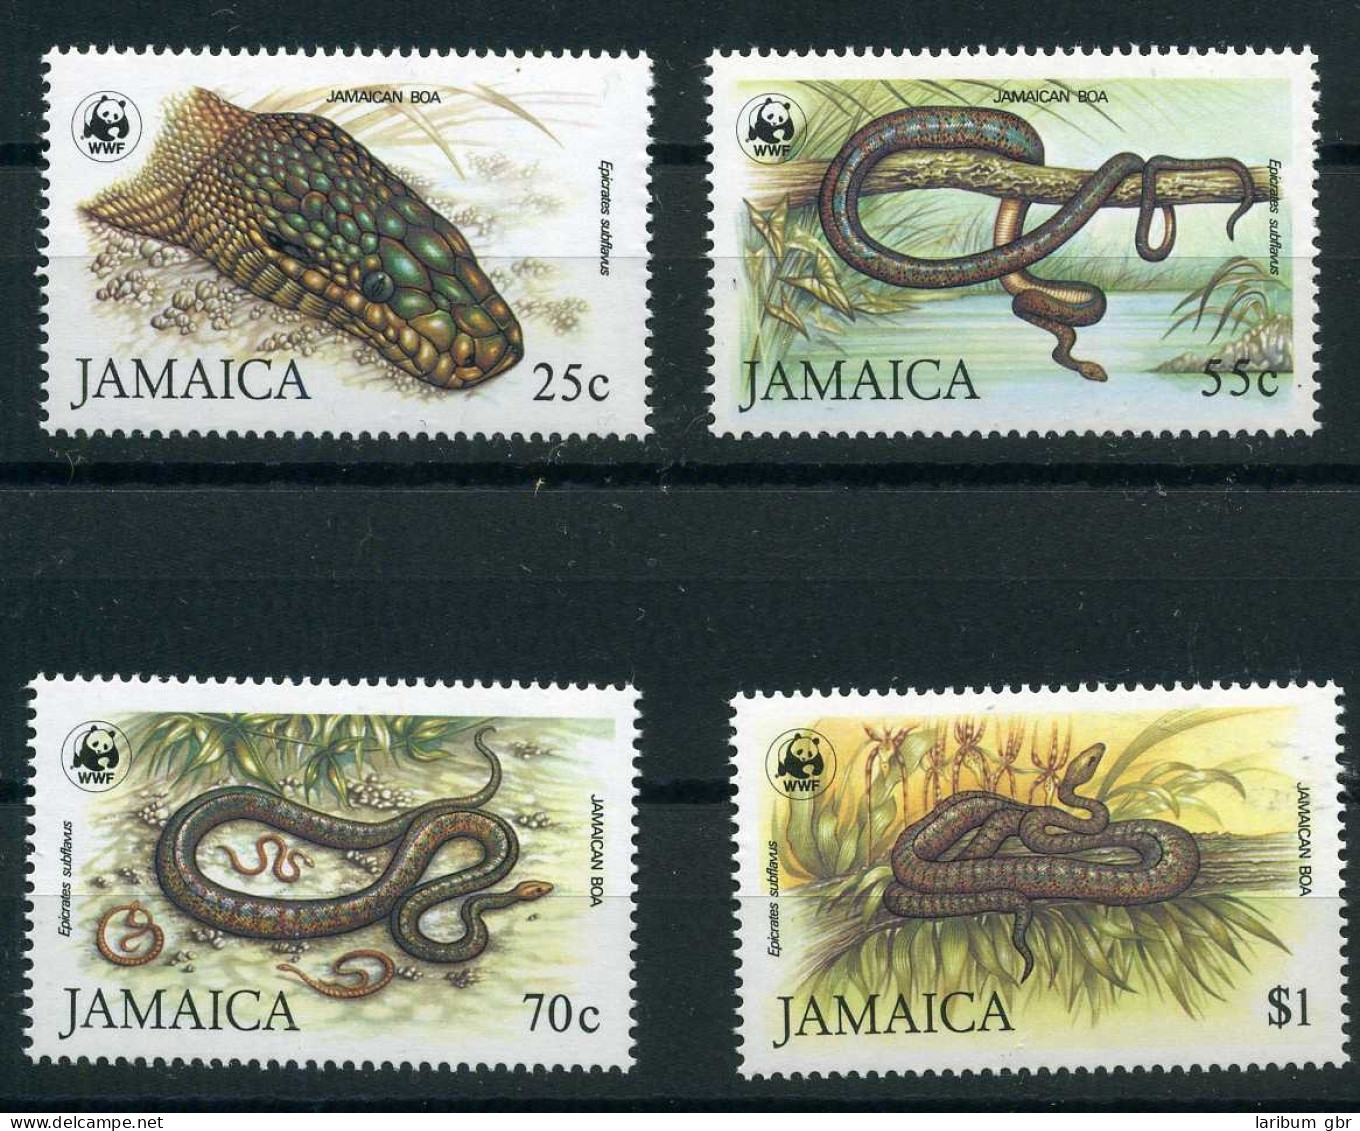 Jamaika 591-594 Postfrisch Schlangen WWF #JM215 - Jamaica (1962-...)